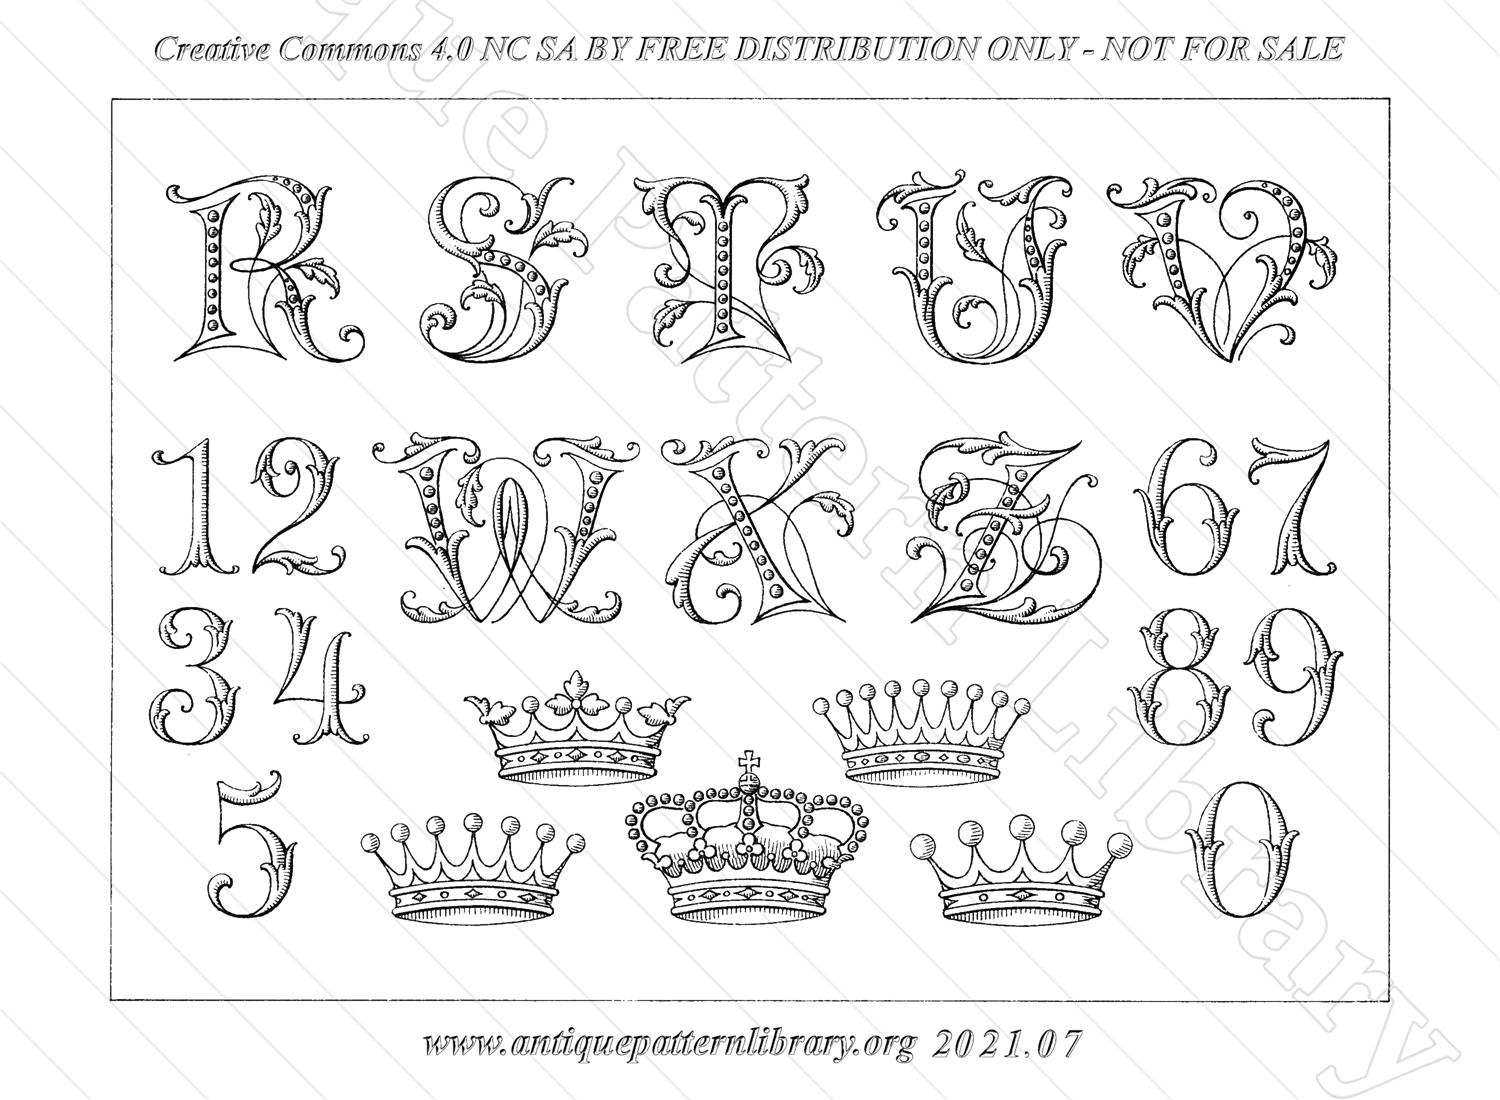 K-YS011 Alphabete fr Plattstich-Stickerei No. 43